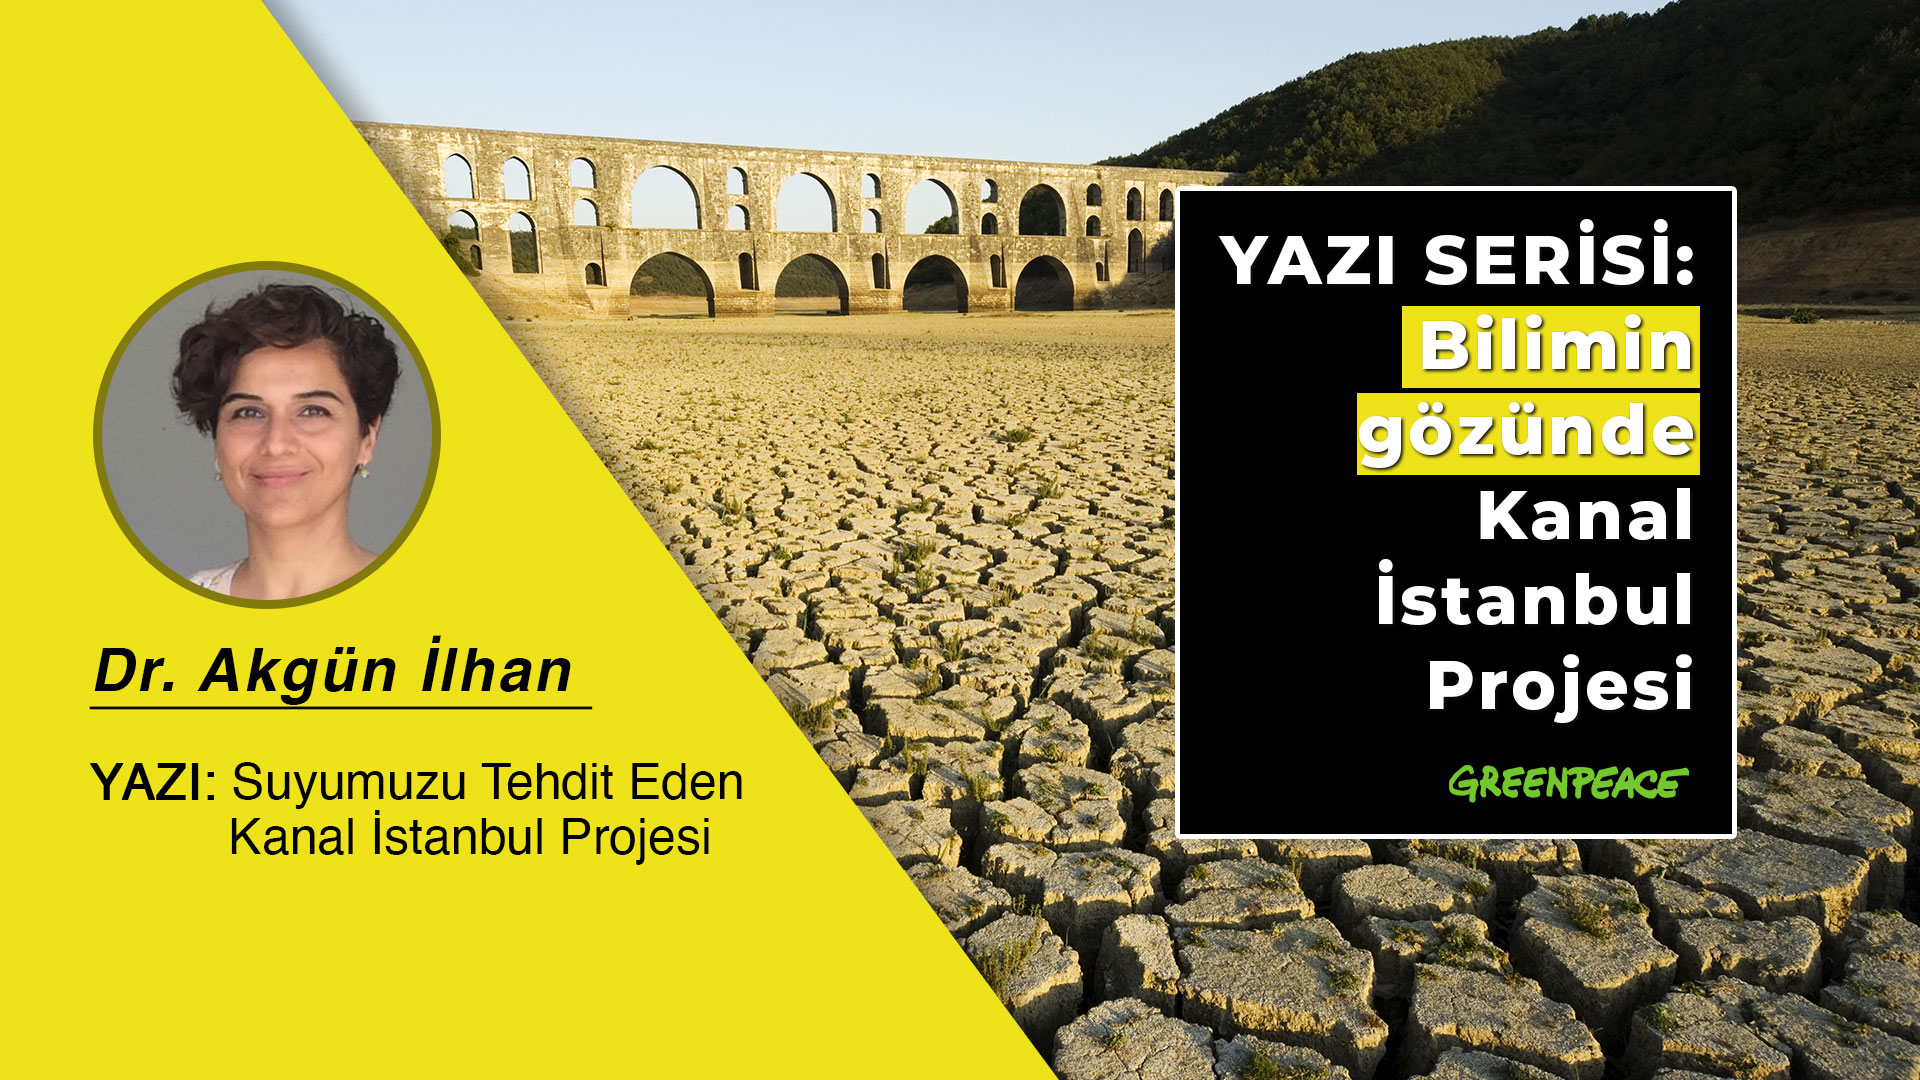 suyumuzu tehdit eden kanal istanbul projesi greenpeace akdeniz turkiye